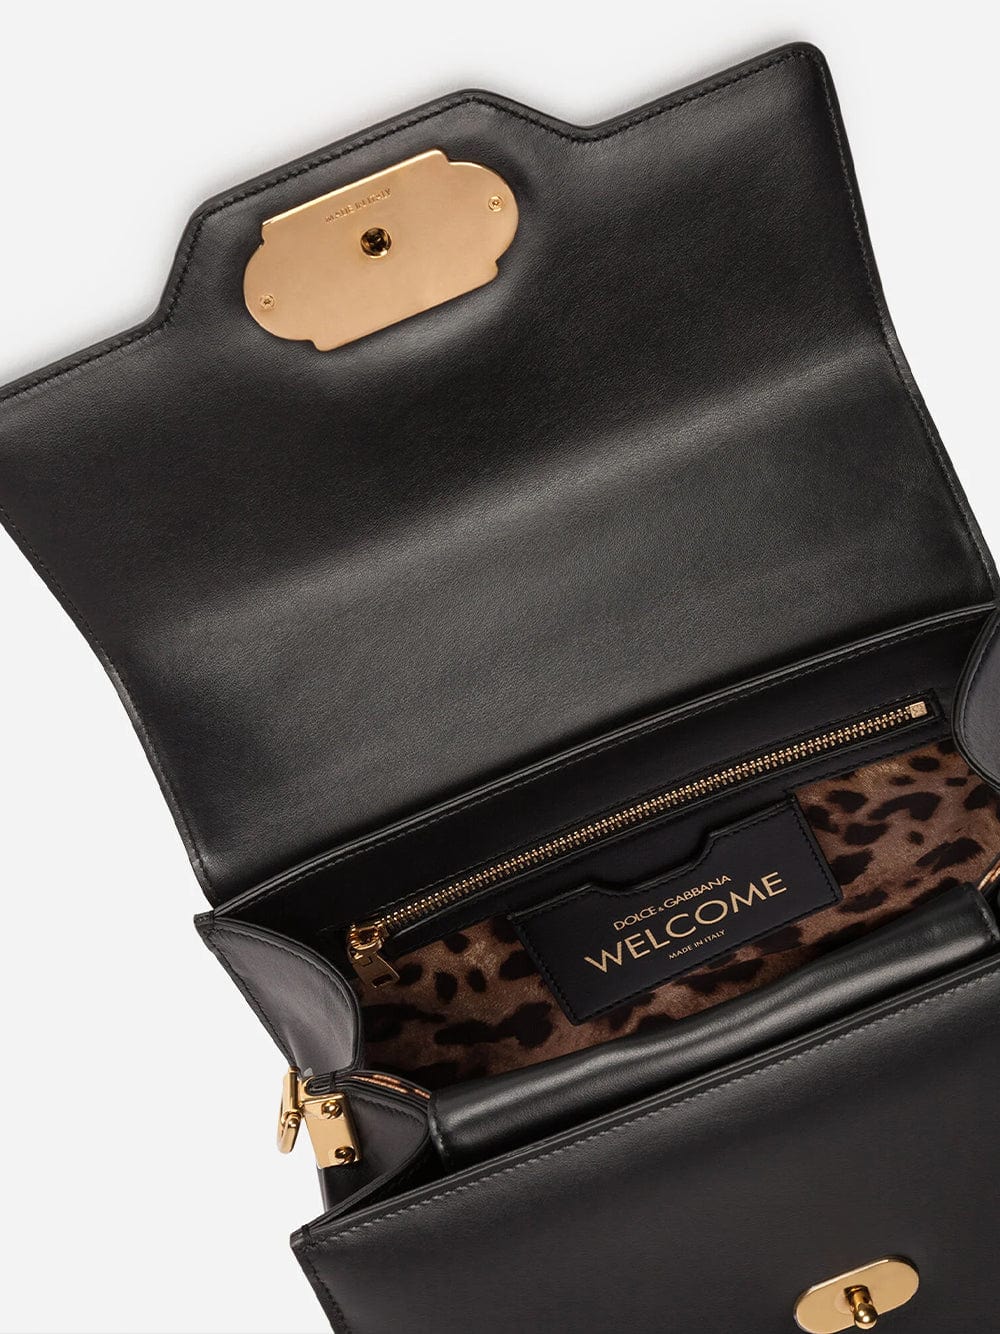 Dolce & Gabbana Welcome Handbag